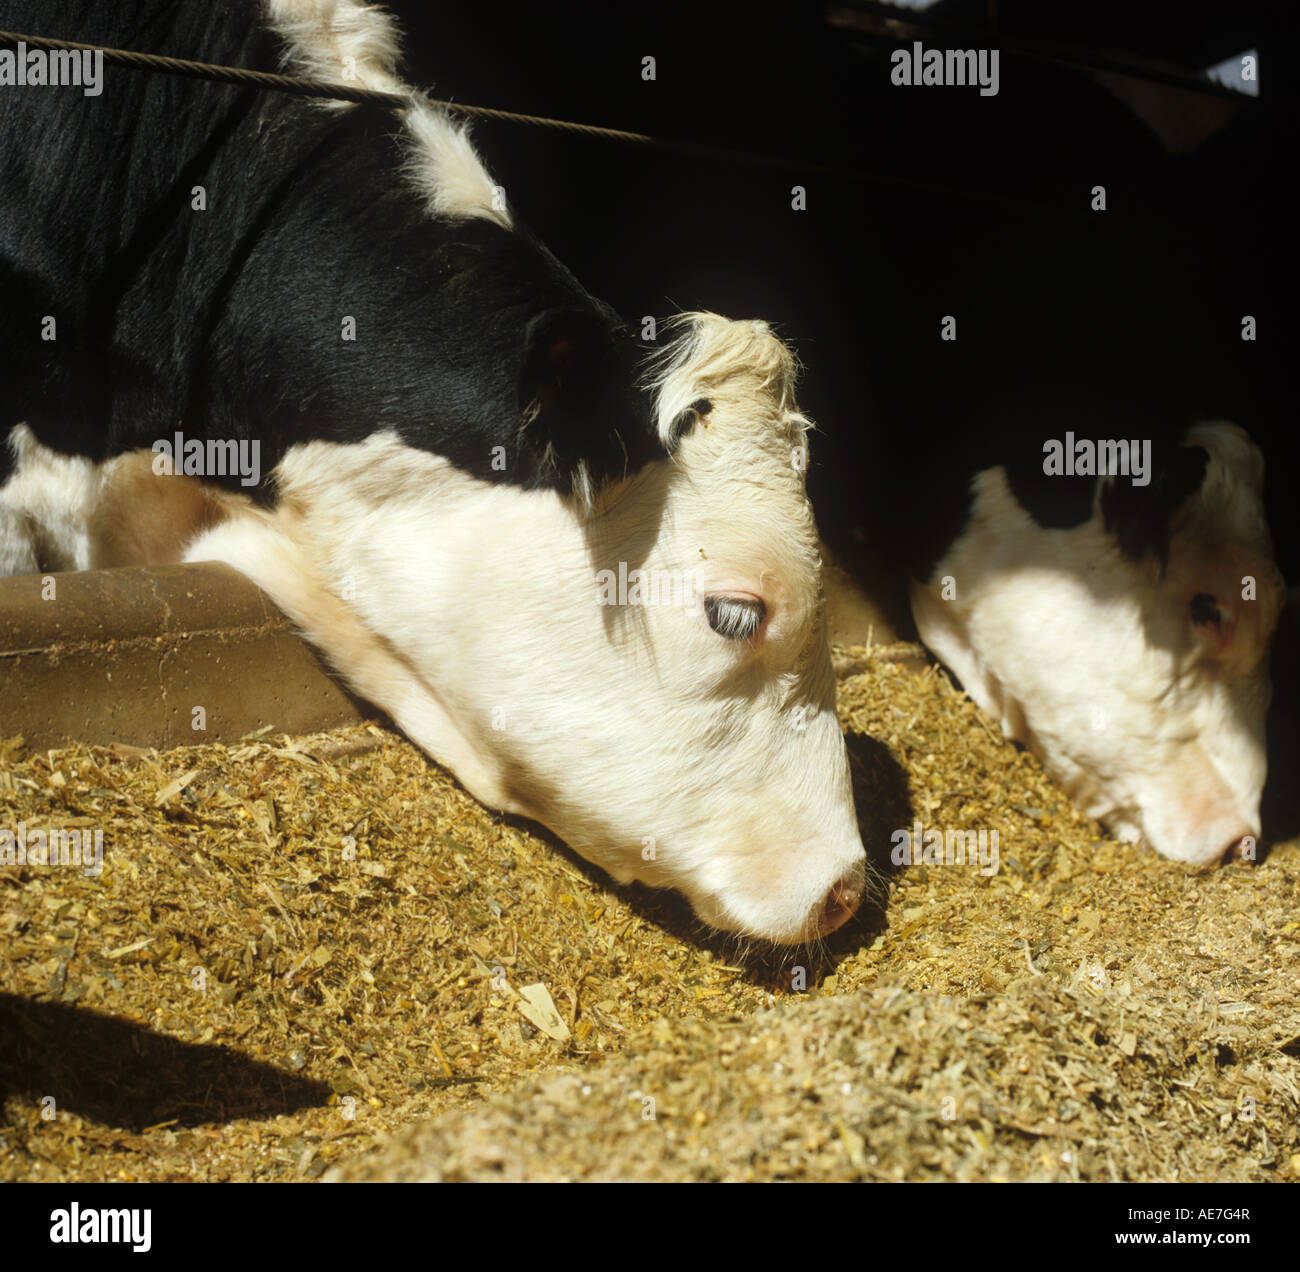 Holstein croce Frisone Hereford bovino in penne alimentando il granturco da foraggio Foto Stock